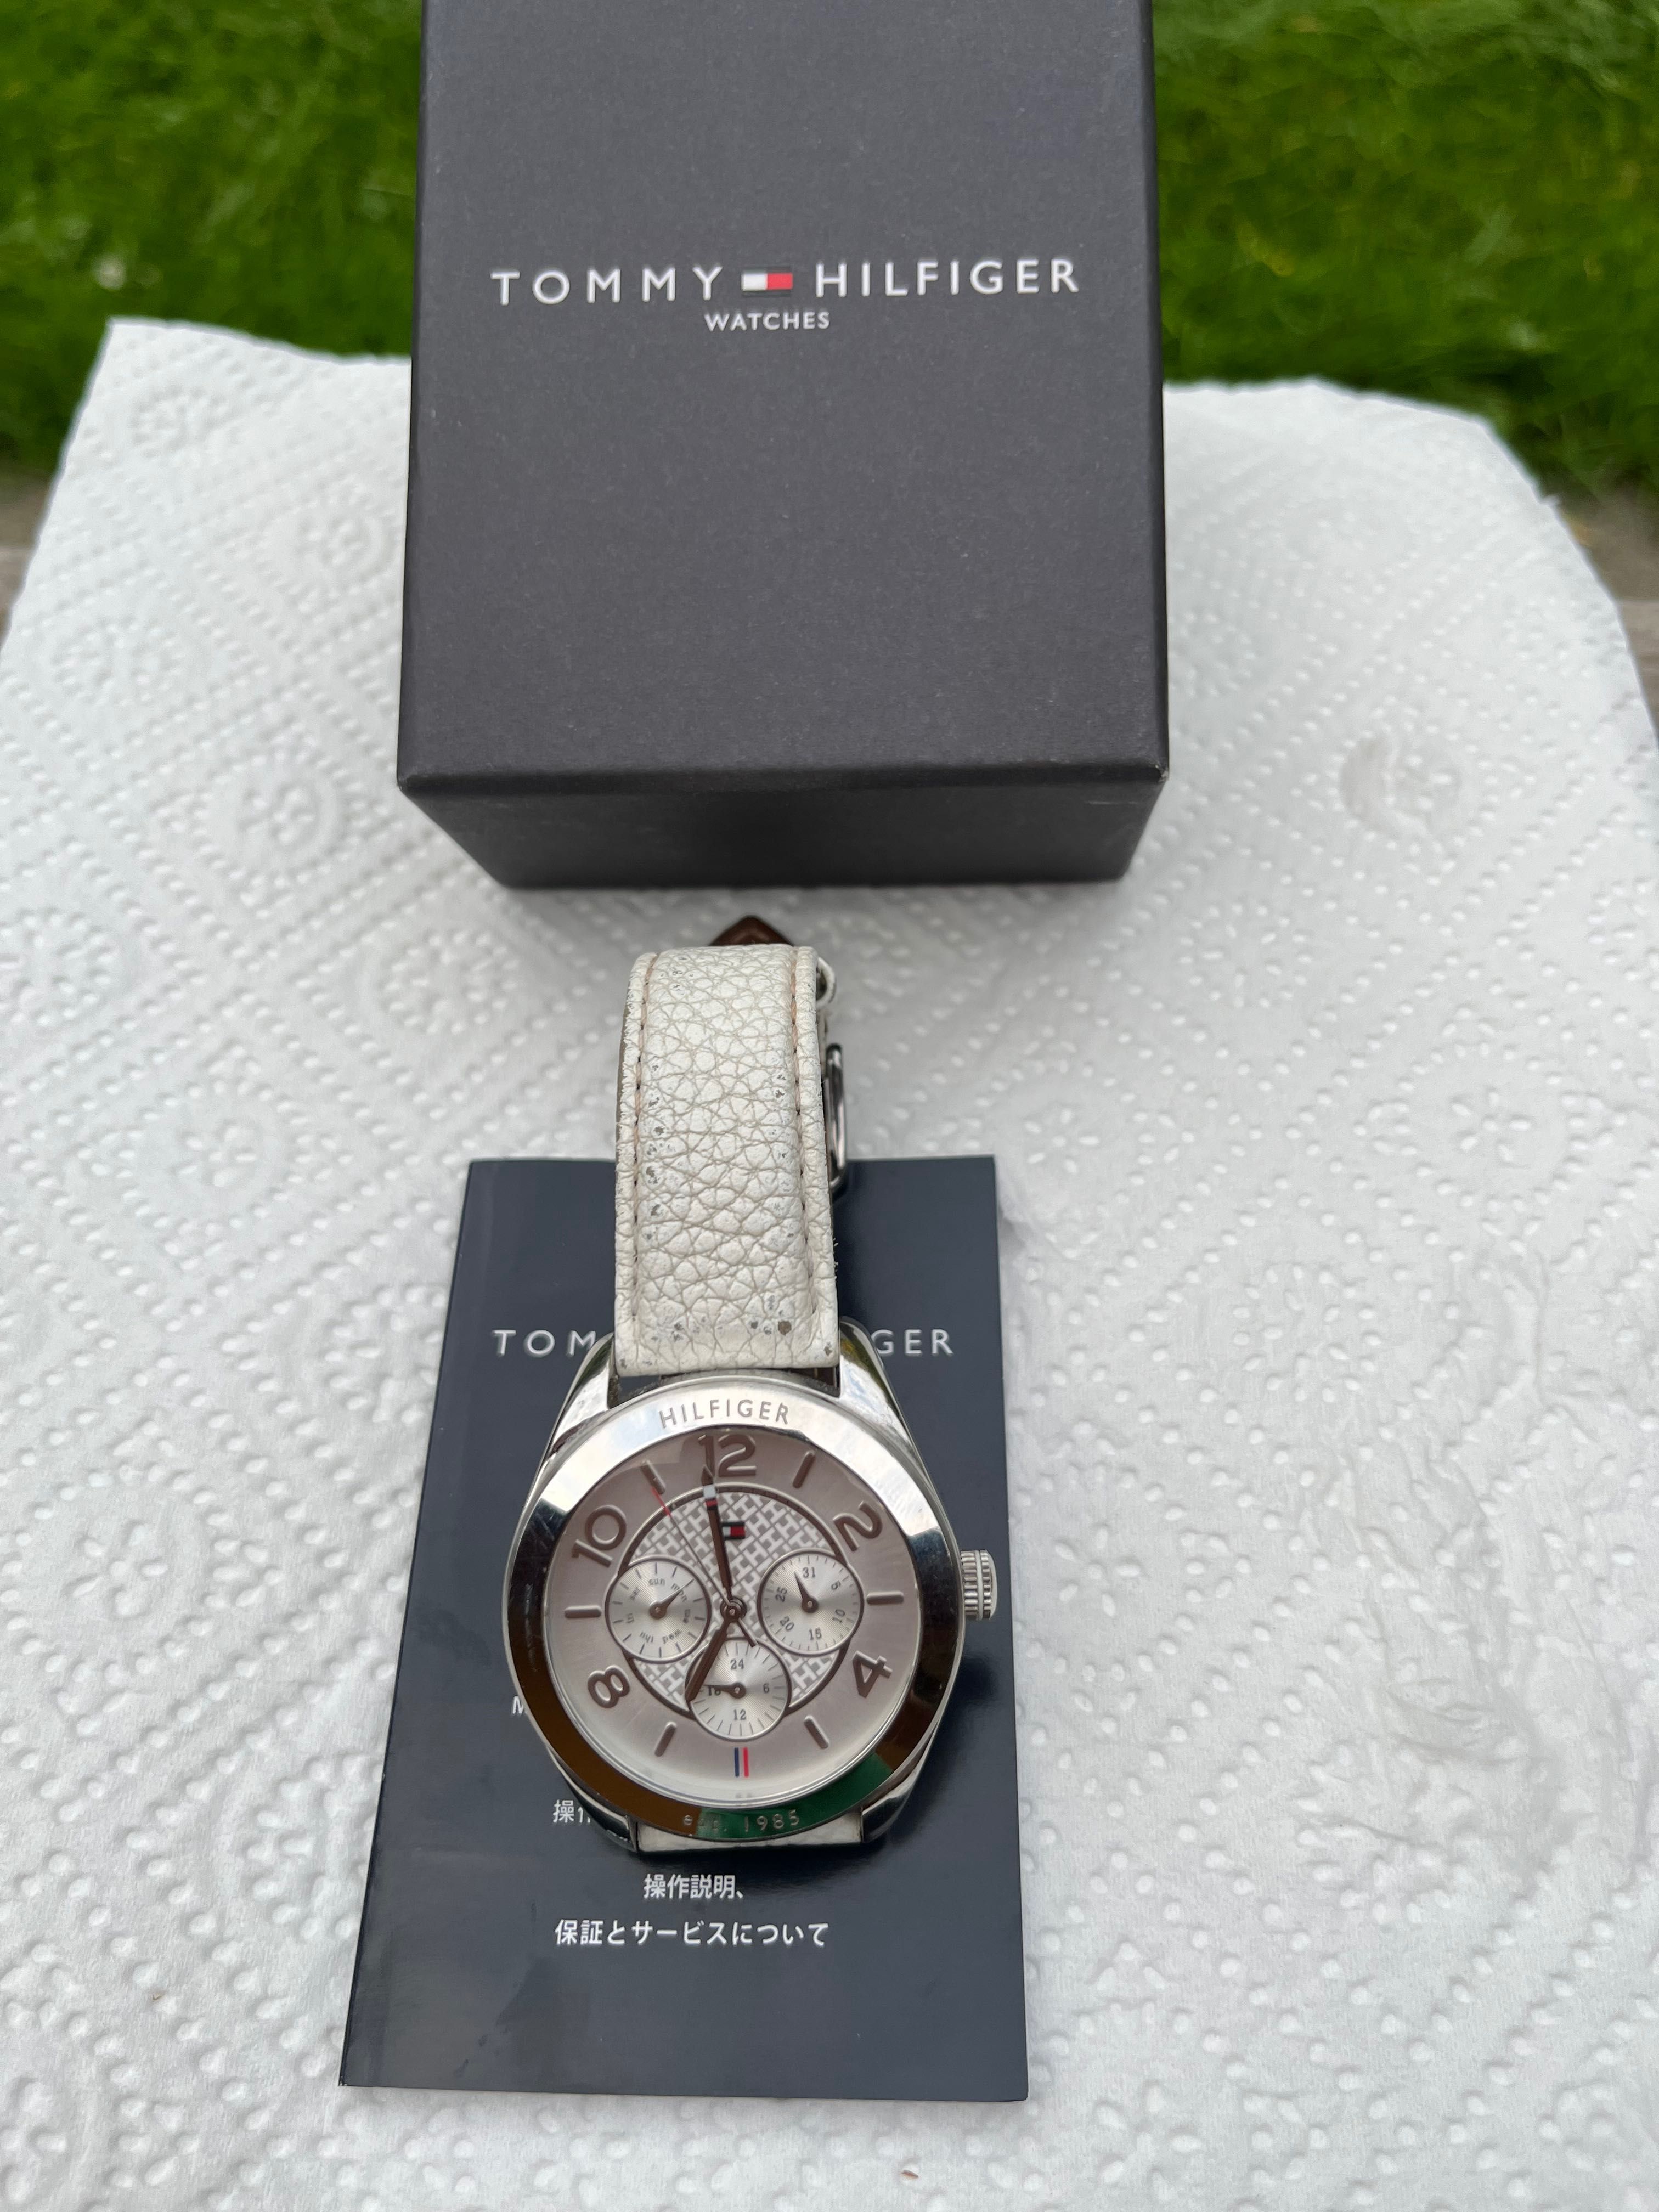 Oryginalny damski zegarek Tommy Hilfiger